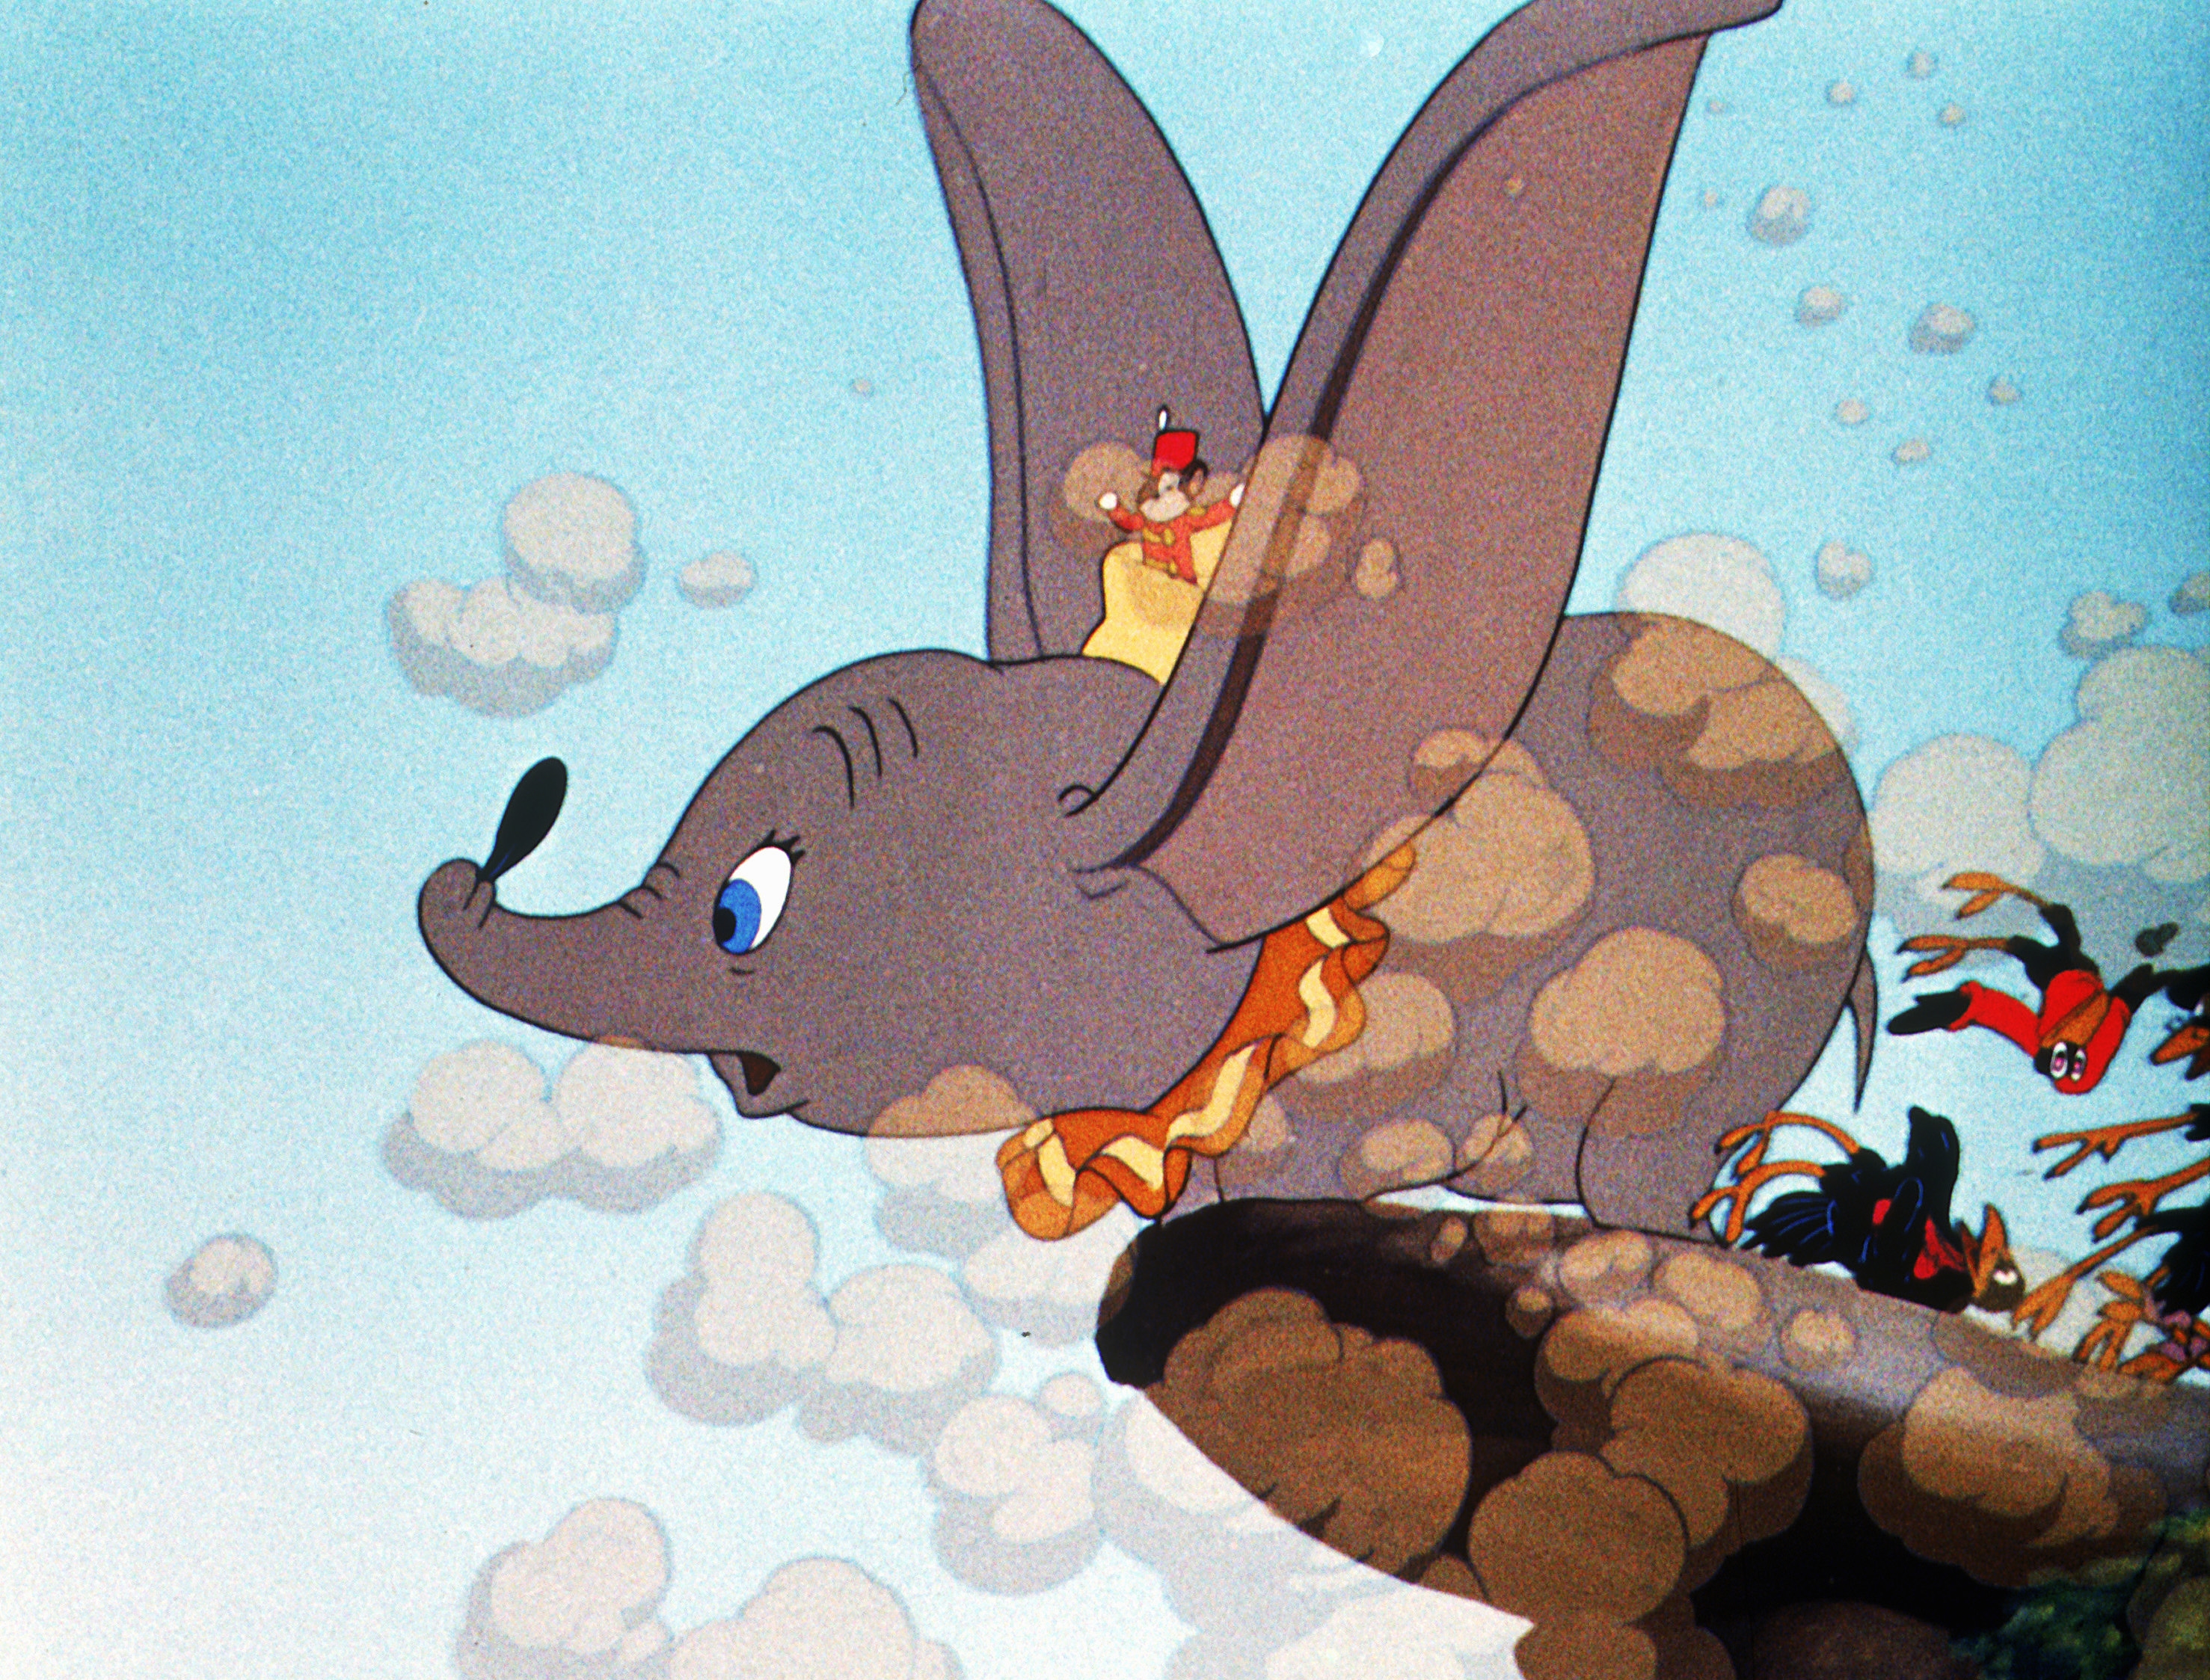 Image du film Dumbo, l'éléphant volant 98258293-9e65-4f1f-a938-06141a9f0bd3